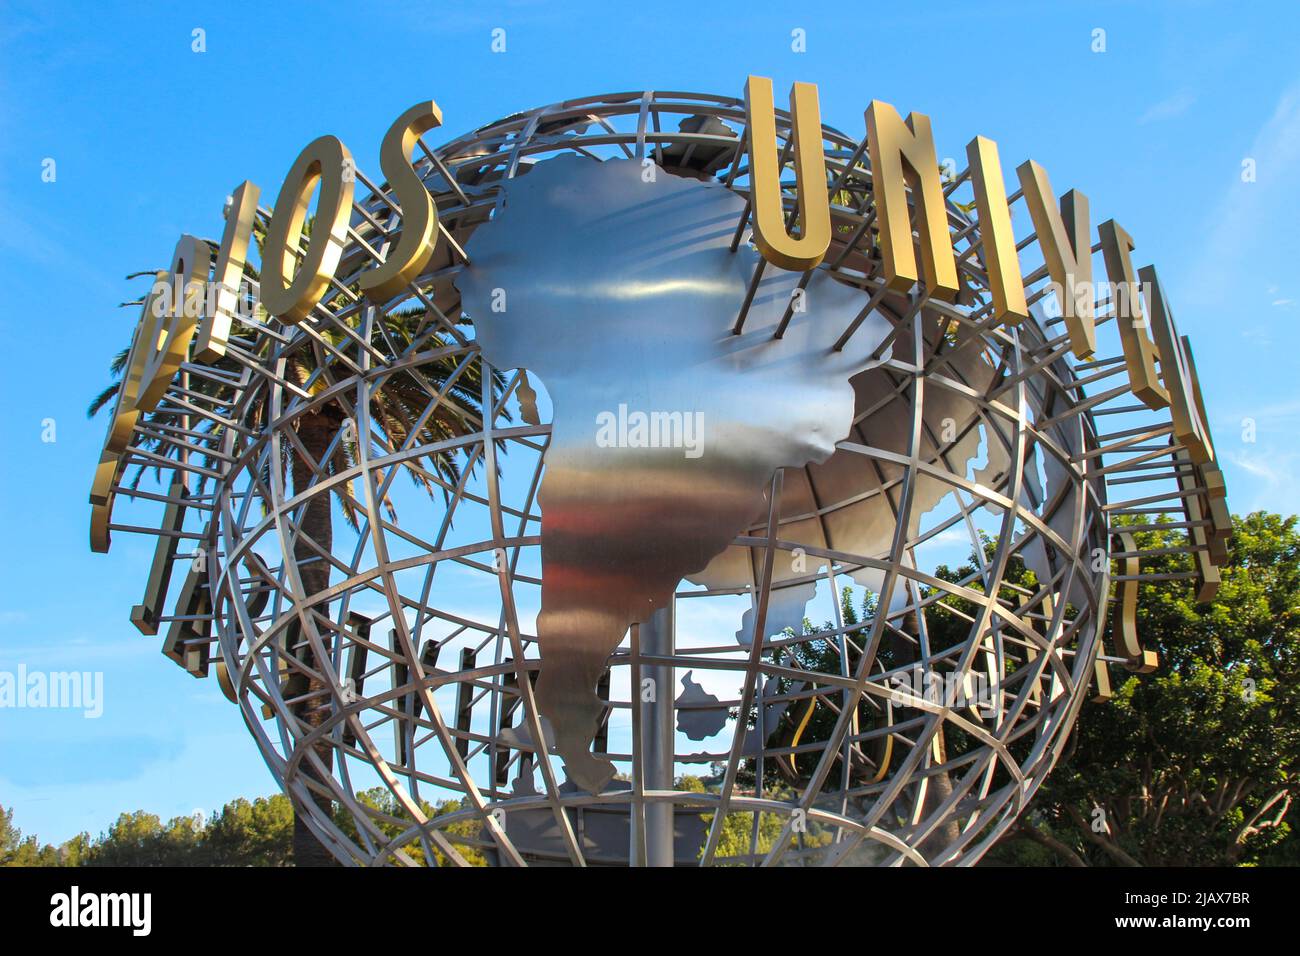 Los Angelos, Californie, Etats-Unis - 13 juillet 2014: Célèbre parc Universal Studios à Hollywood. Entrée du parc. Banque D'Images